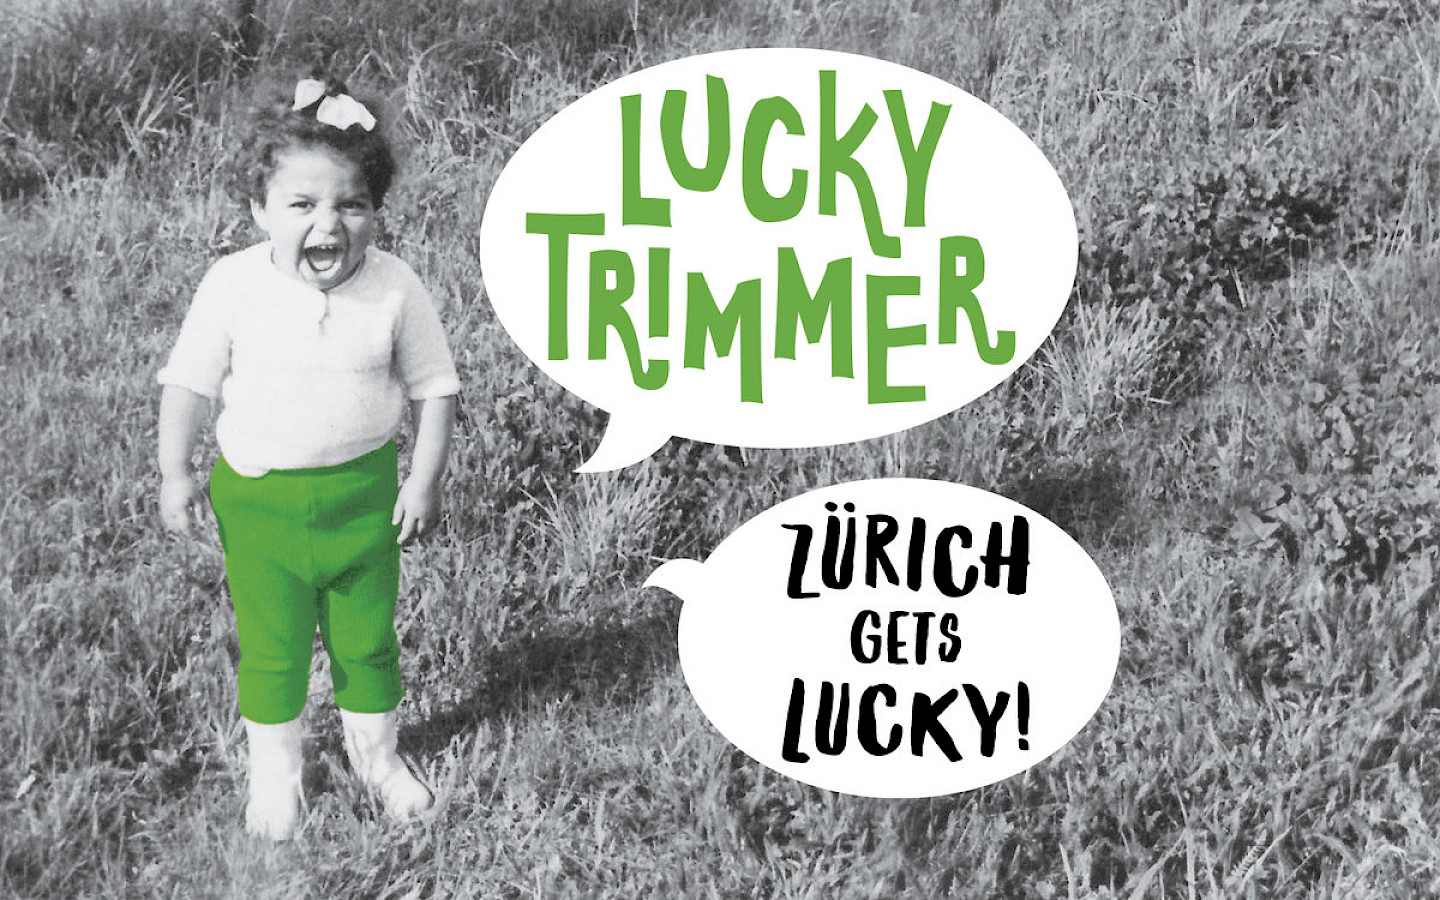 Lucky Trimmer presents: Zürich gets lucky!